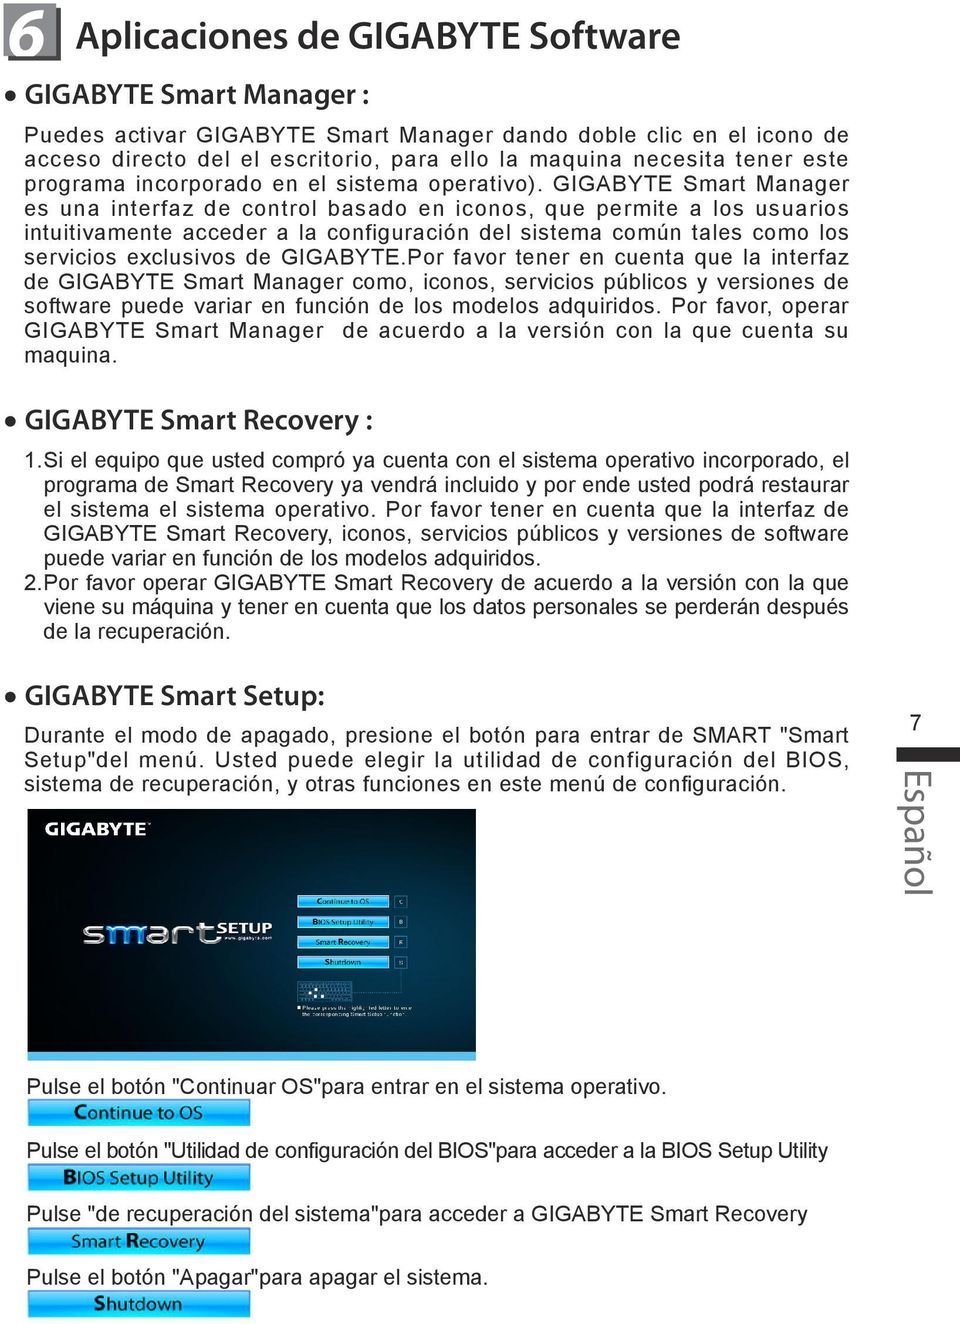 GIGABYTE Smart Manager es una interfaz de control basado en iconos, que permite a los usuarios intuitivamente acceder a la configuración del sistema común tales como los servicios exclusivos de